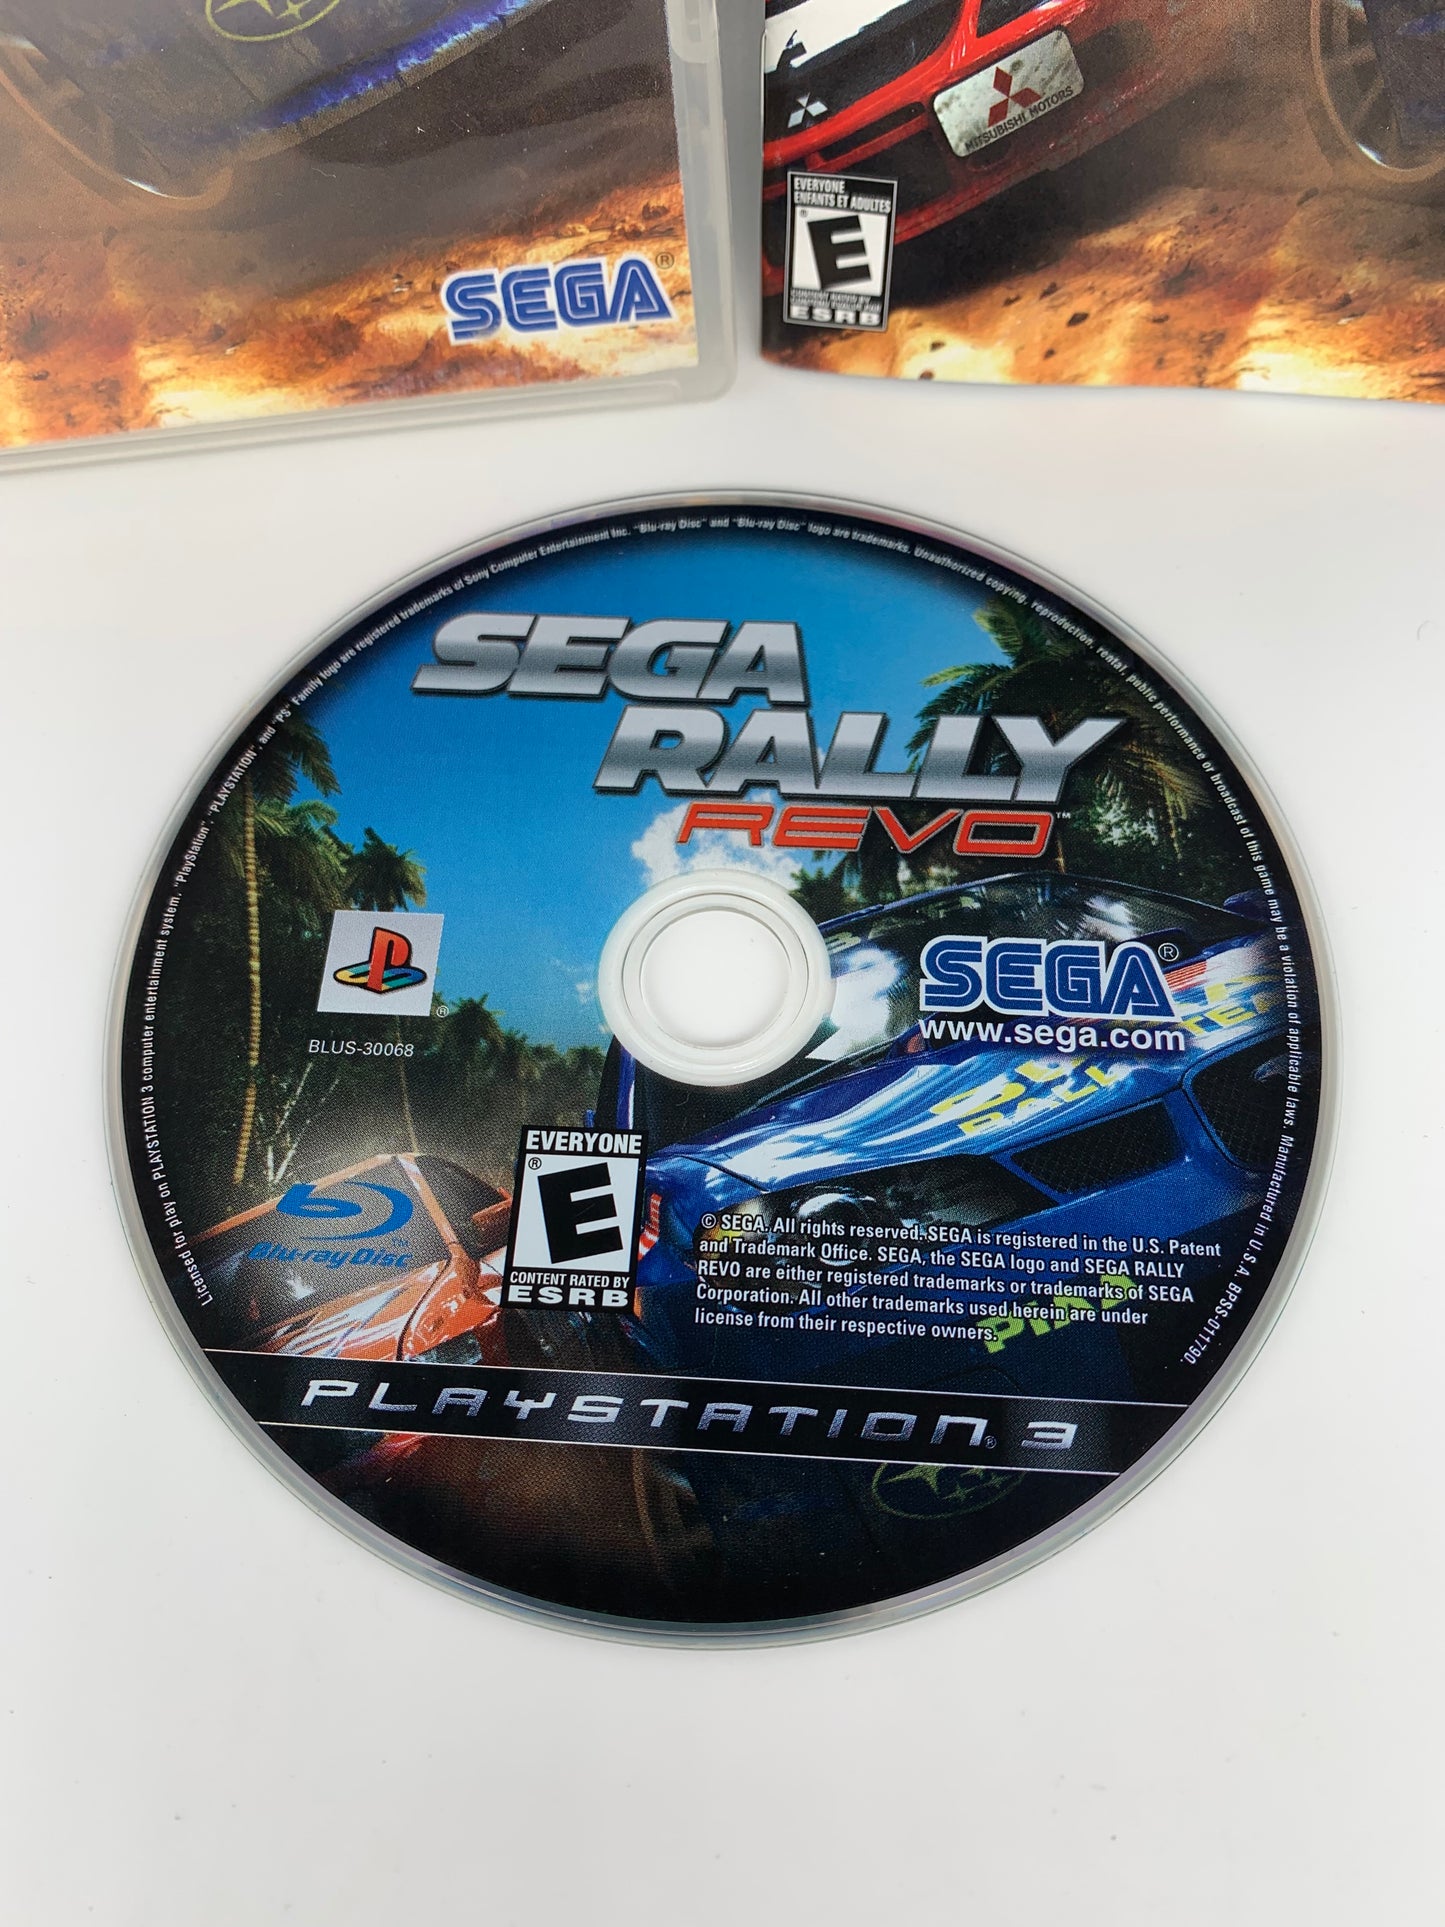 SONY PLAYSTATiON 3 [PS3] | SEGA RALLY REVO